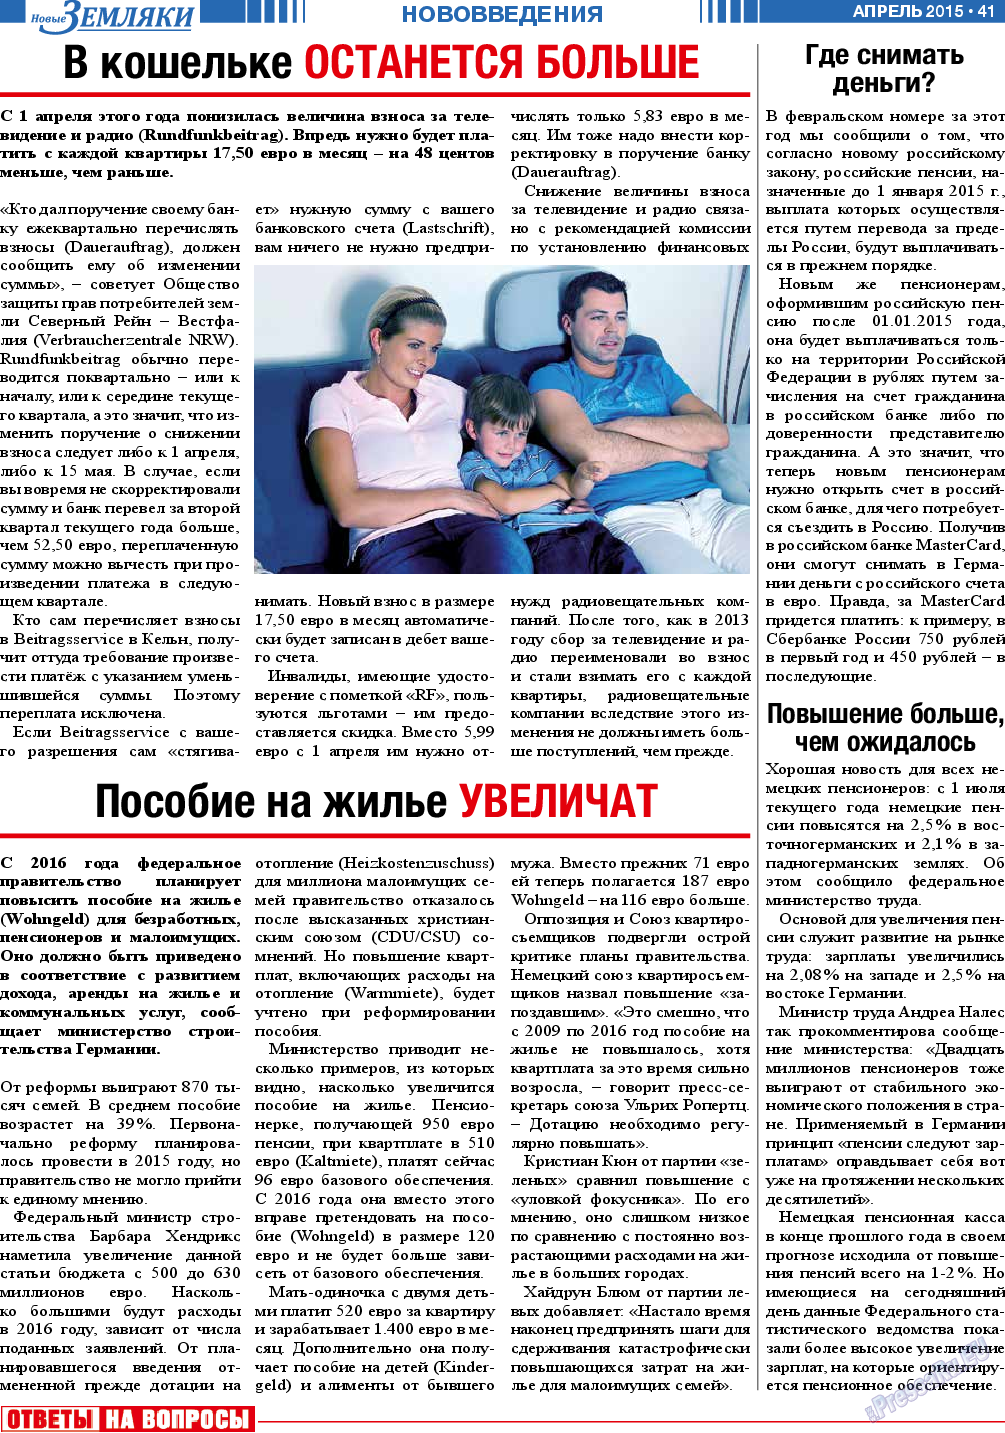 Новые Земляки (газета). 2015 год, номер 4, стр. 41